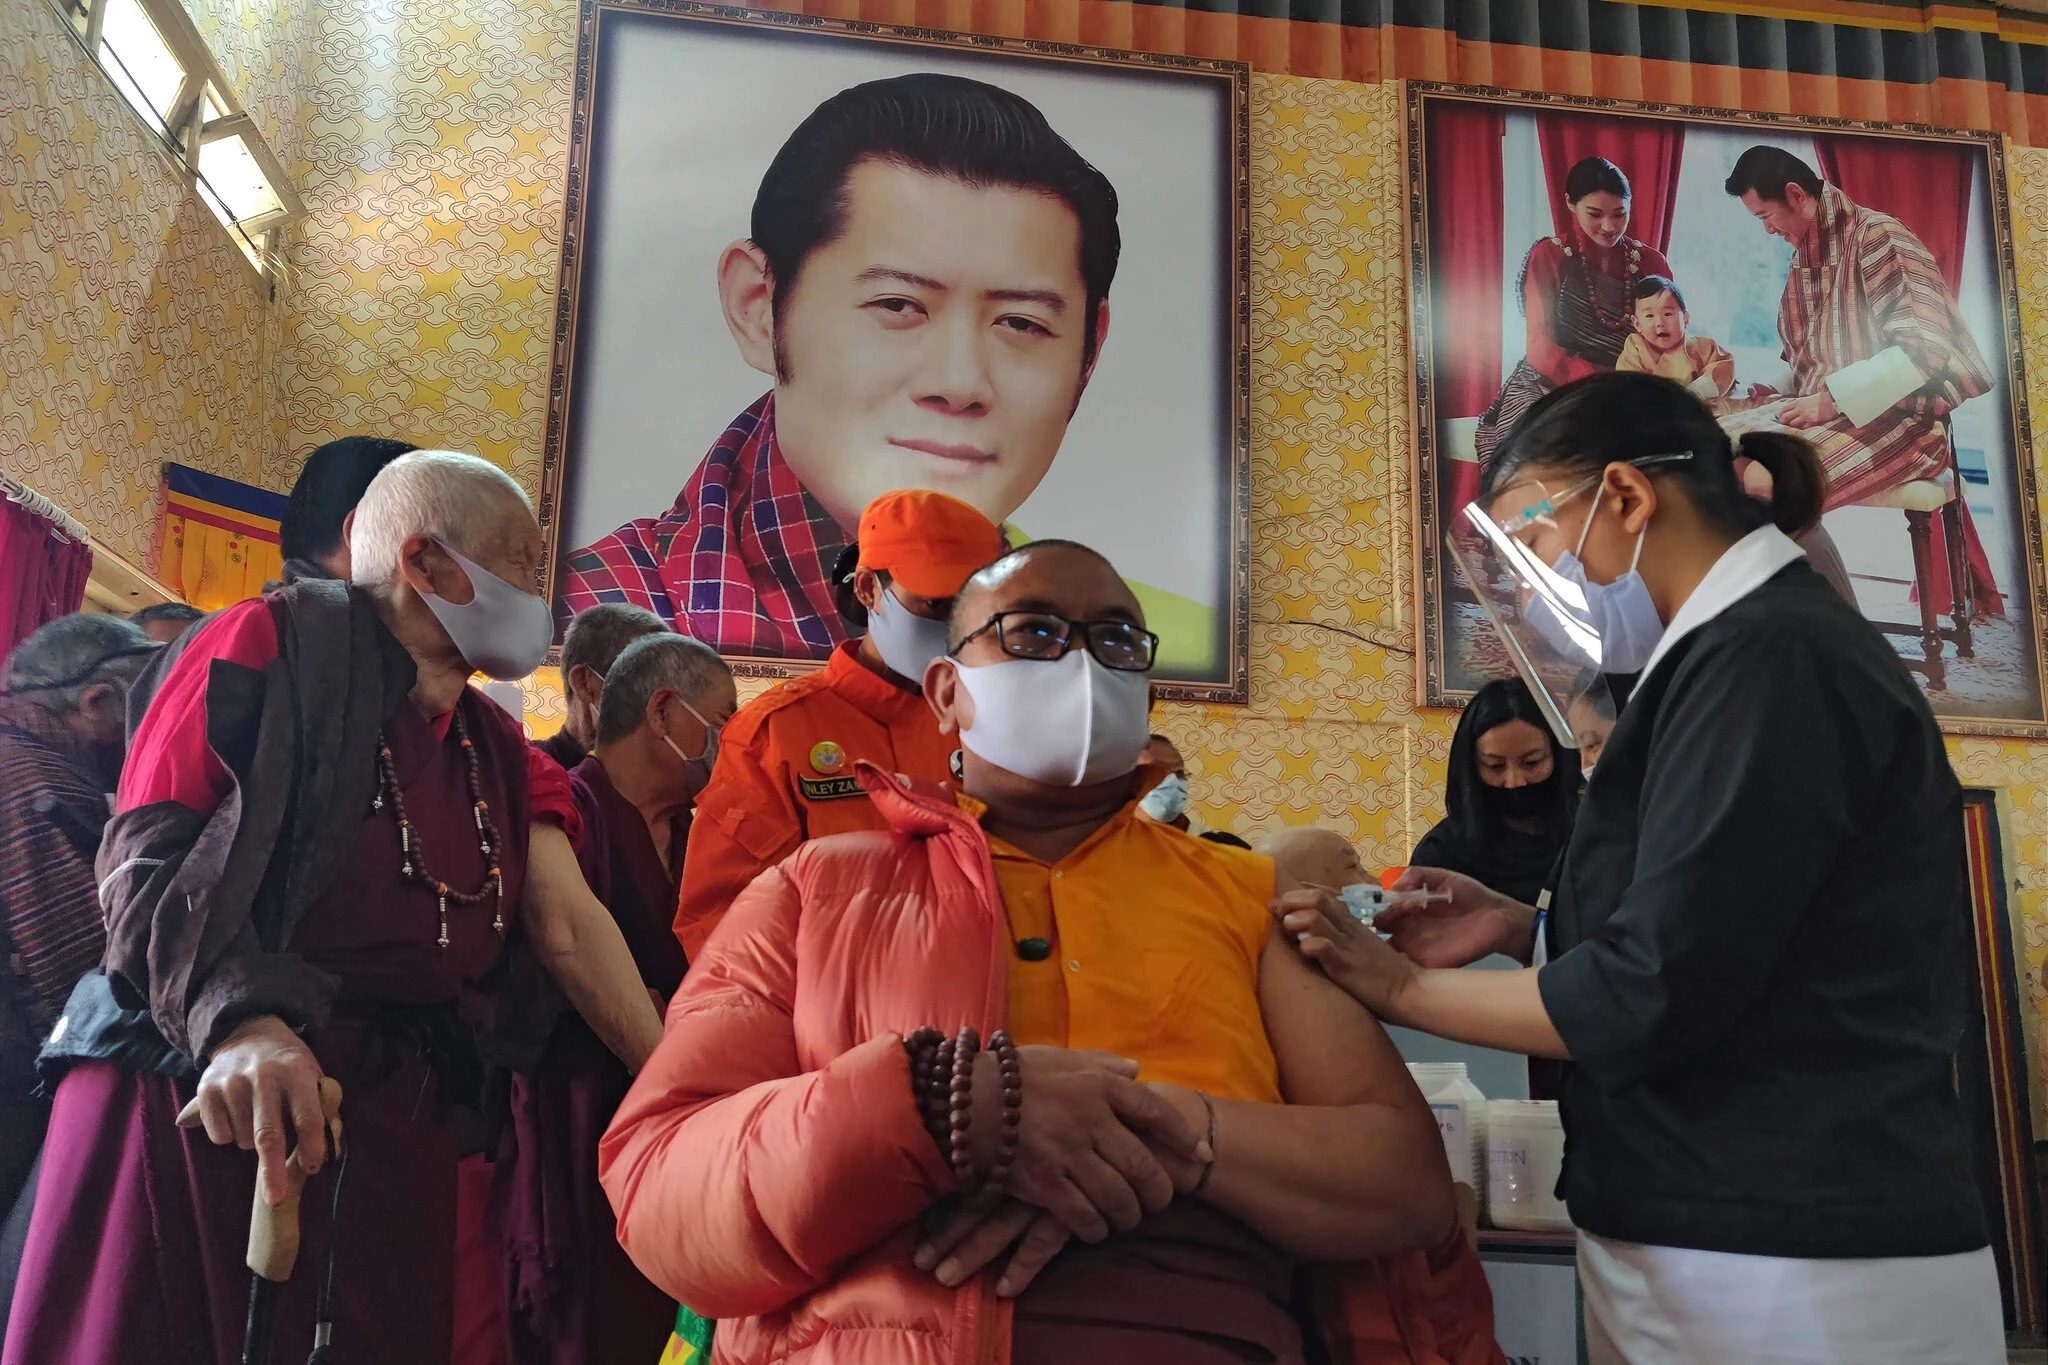 واکسیناسیون کرونا در بوتان چگونه از بیشتر کشورها پیشی گرفت